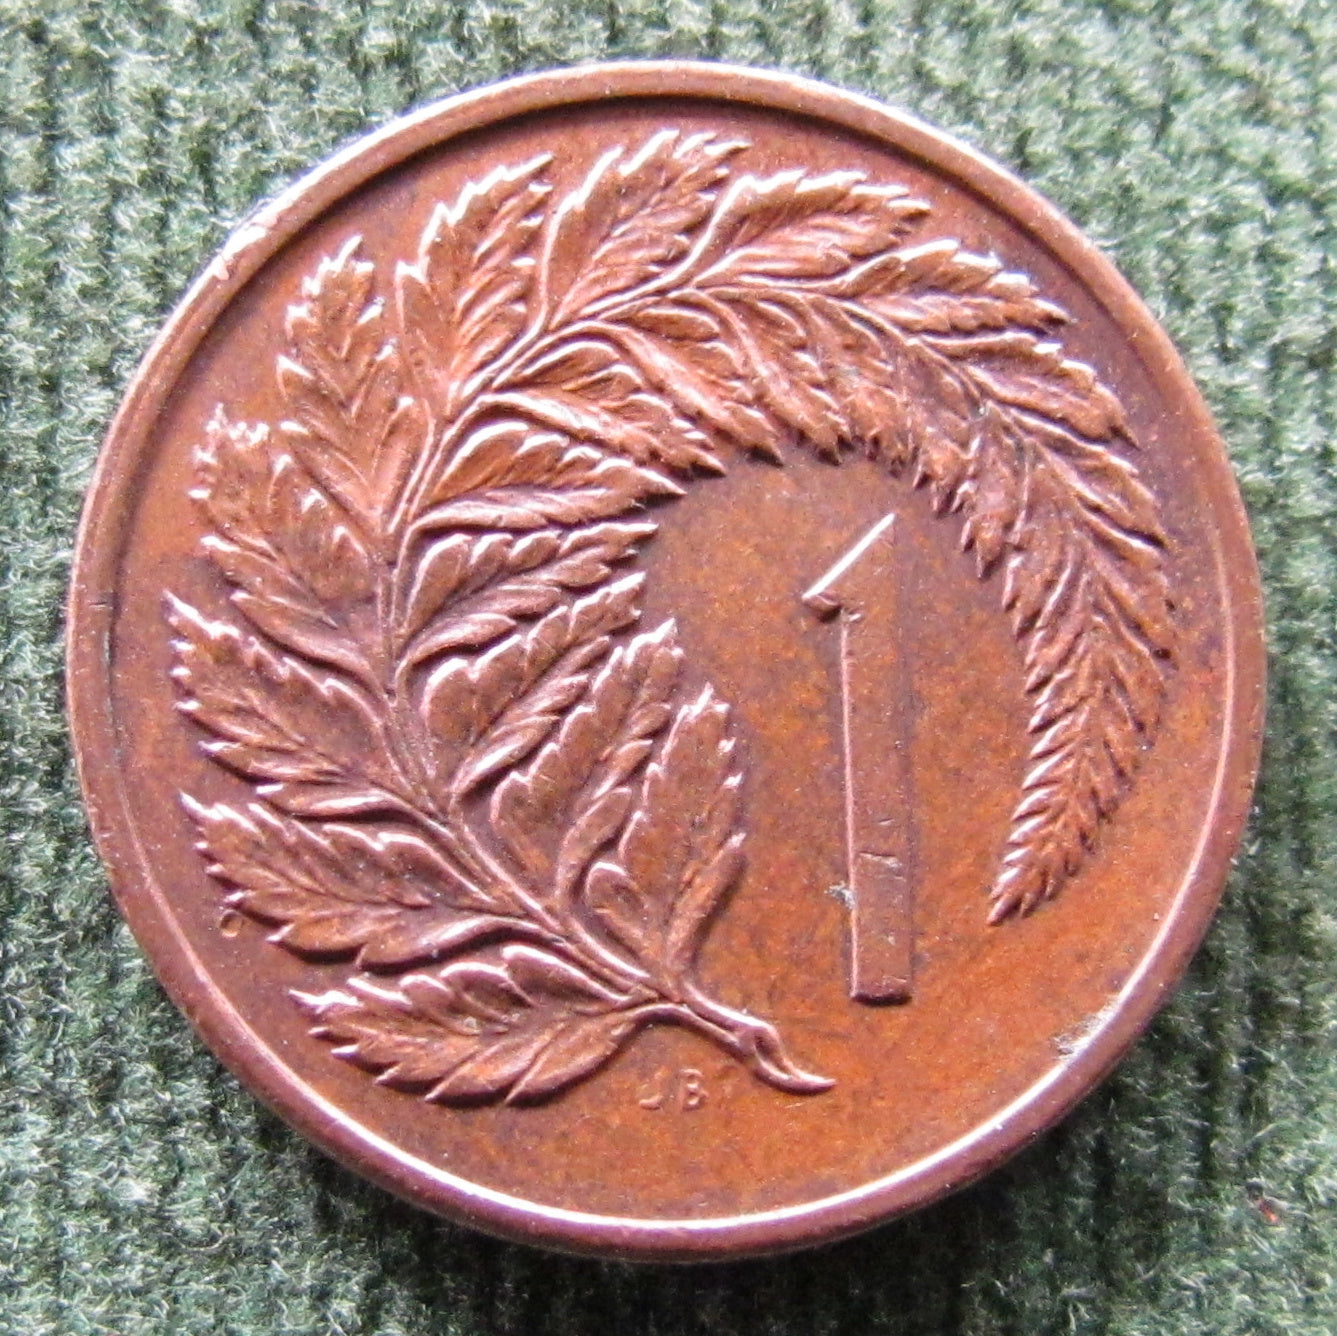 New Zealand 1982 1 Cent Queen Elizabeth Coin